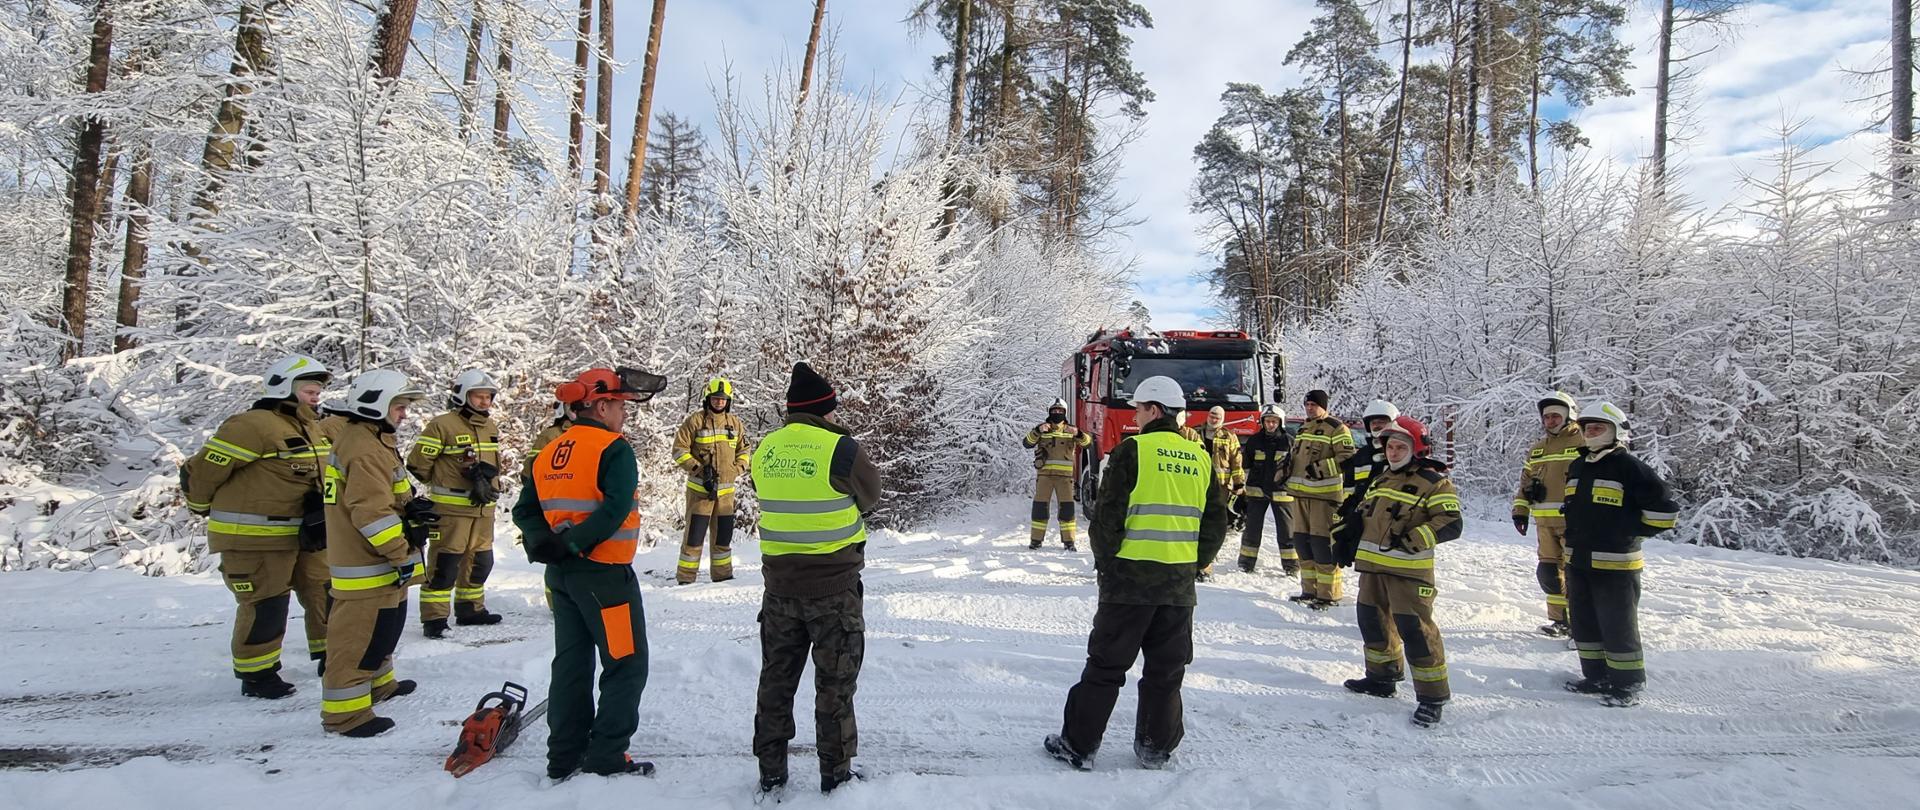 Strażacy z instrukcją leśniczego i pilarzy realizują ćwiczenia w lesie - przerzynka drewna, okrzesywanie, podnoszenie kłody